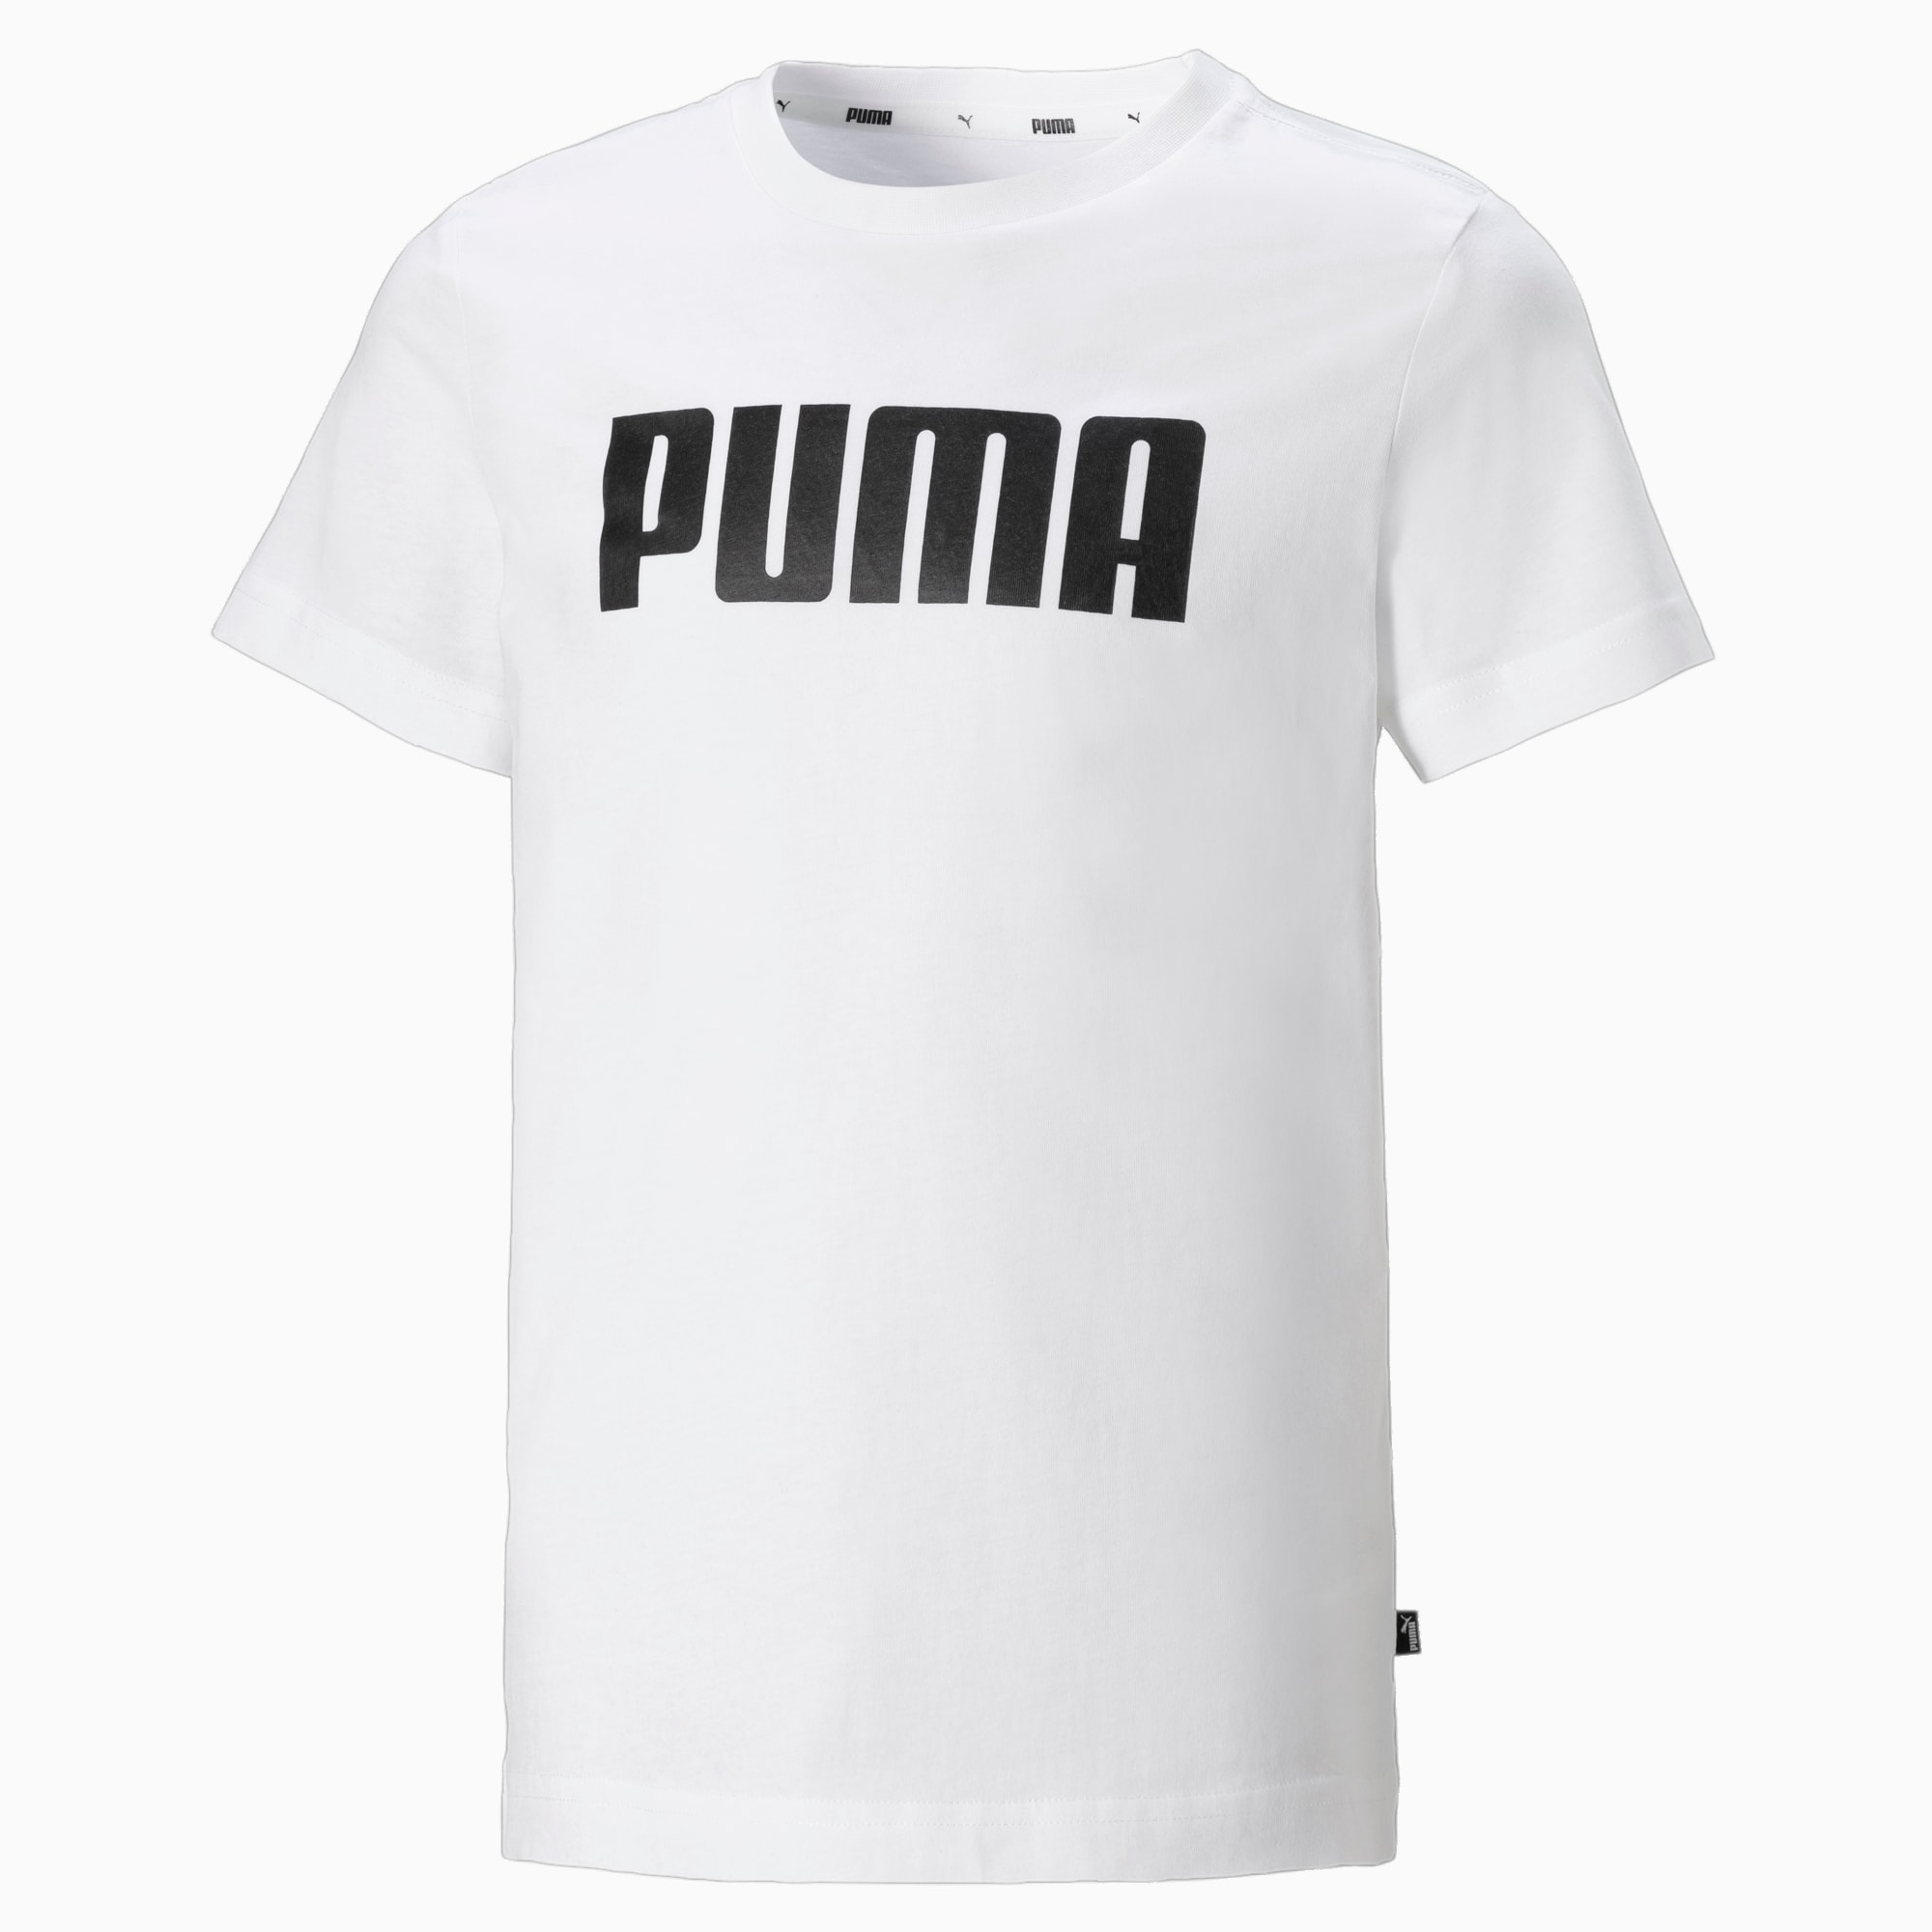 where are puma clothes made